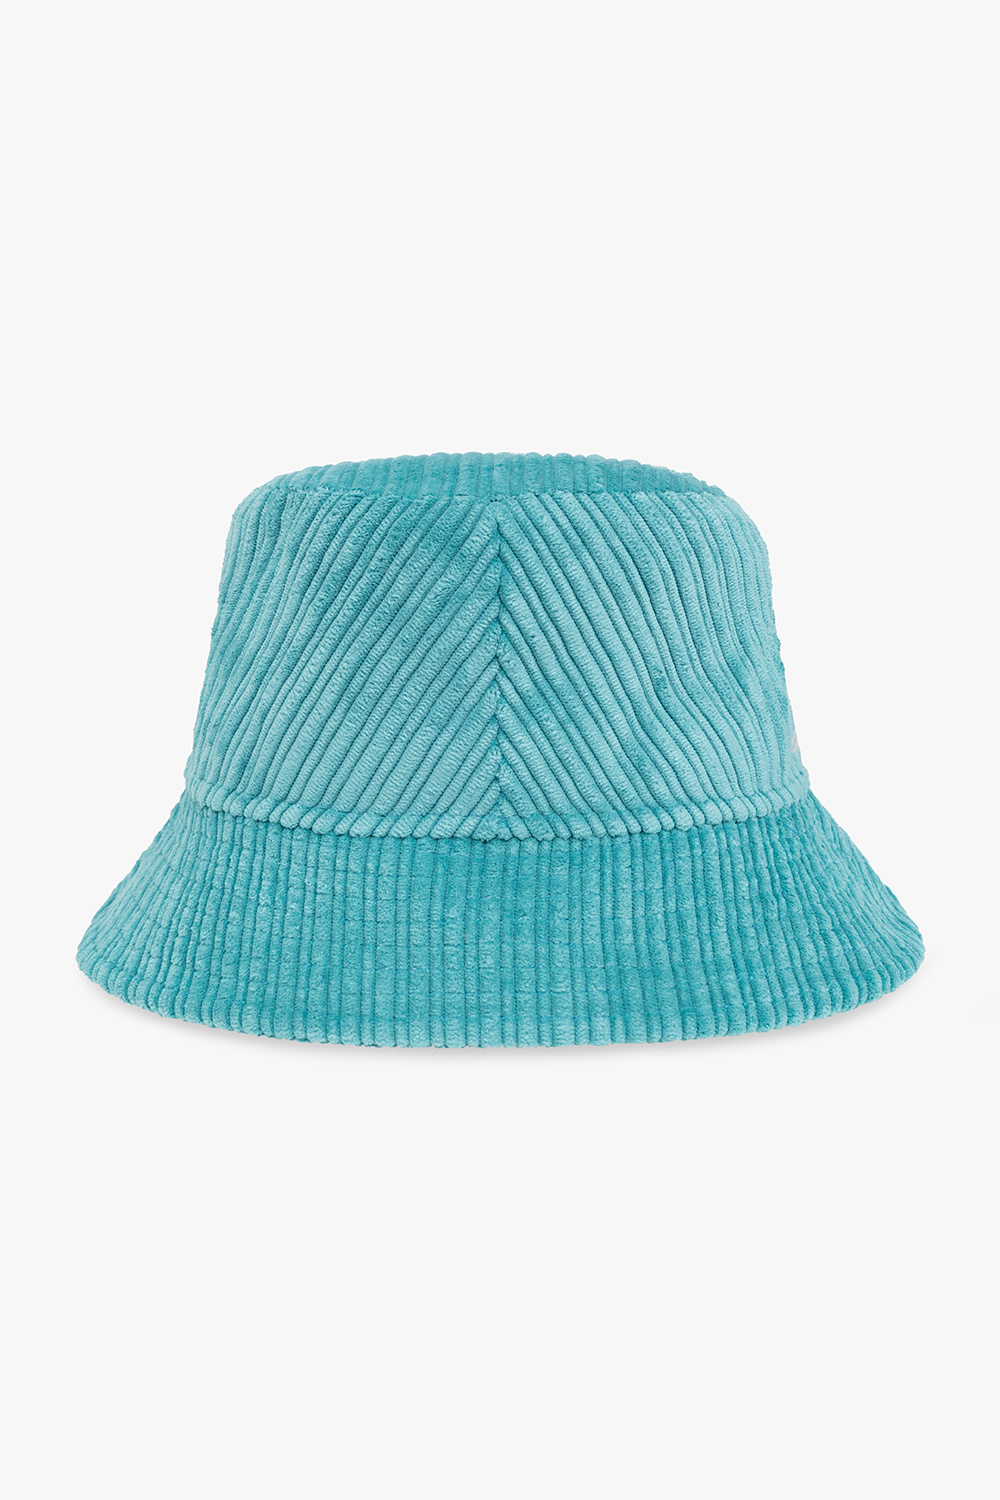 Isabel Marant ‘Haleyh’ corduroy bucket hat